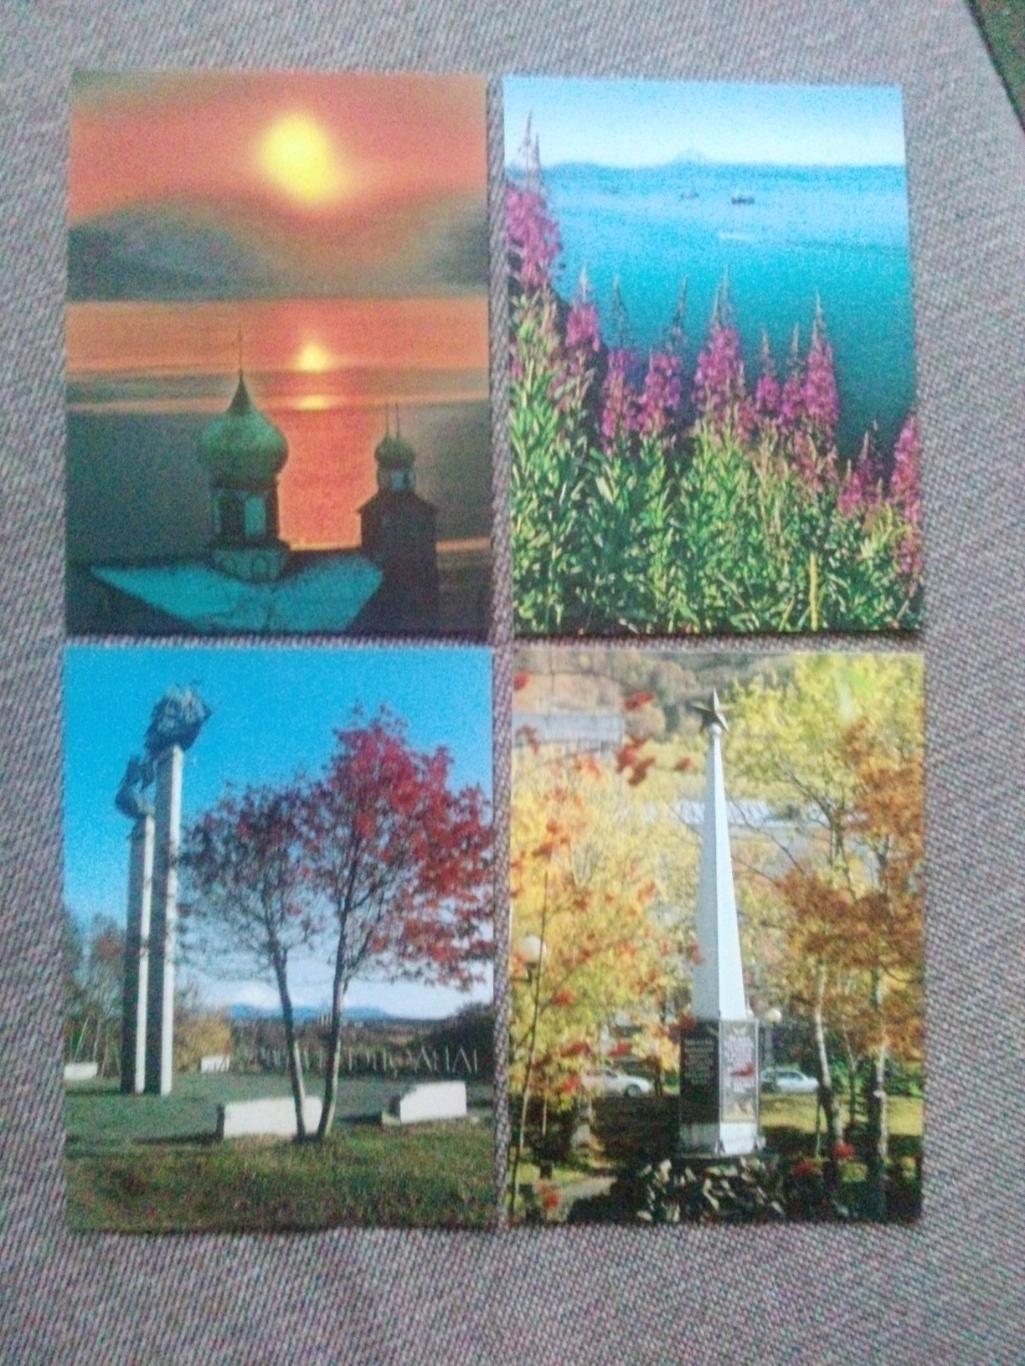 Осенний Петропавловск-Камчатский 2000 - е годы (Россия) полный набор-15 открыток 4